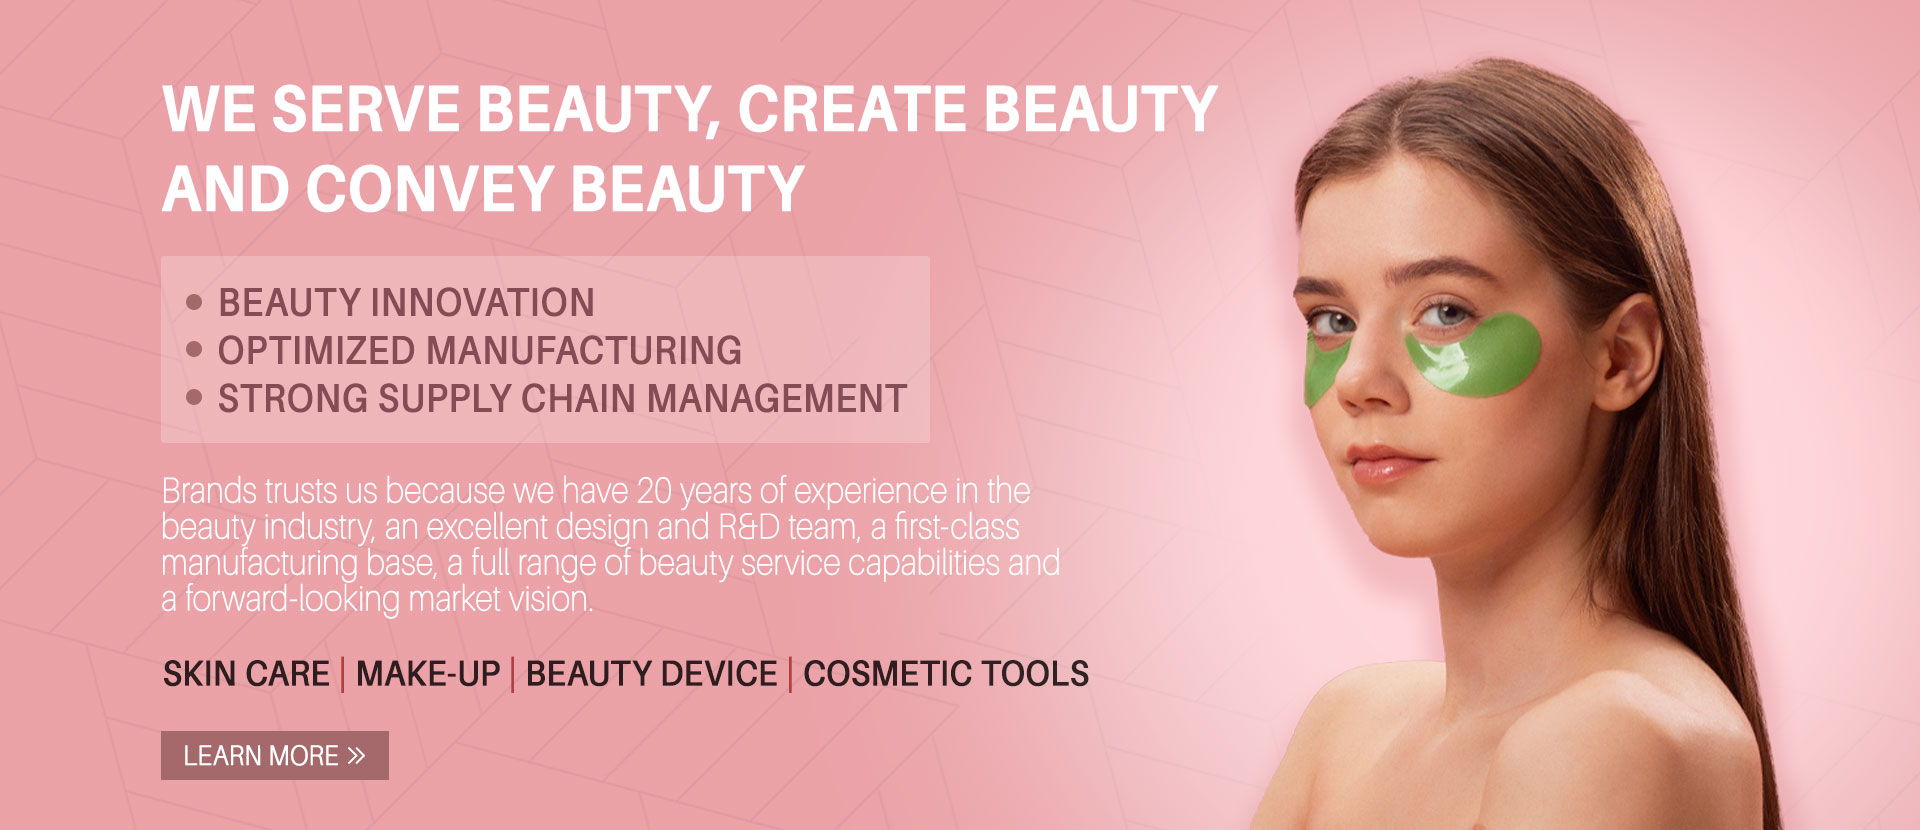 Beauty Innovation